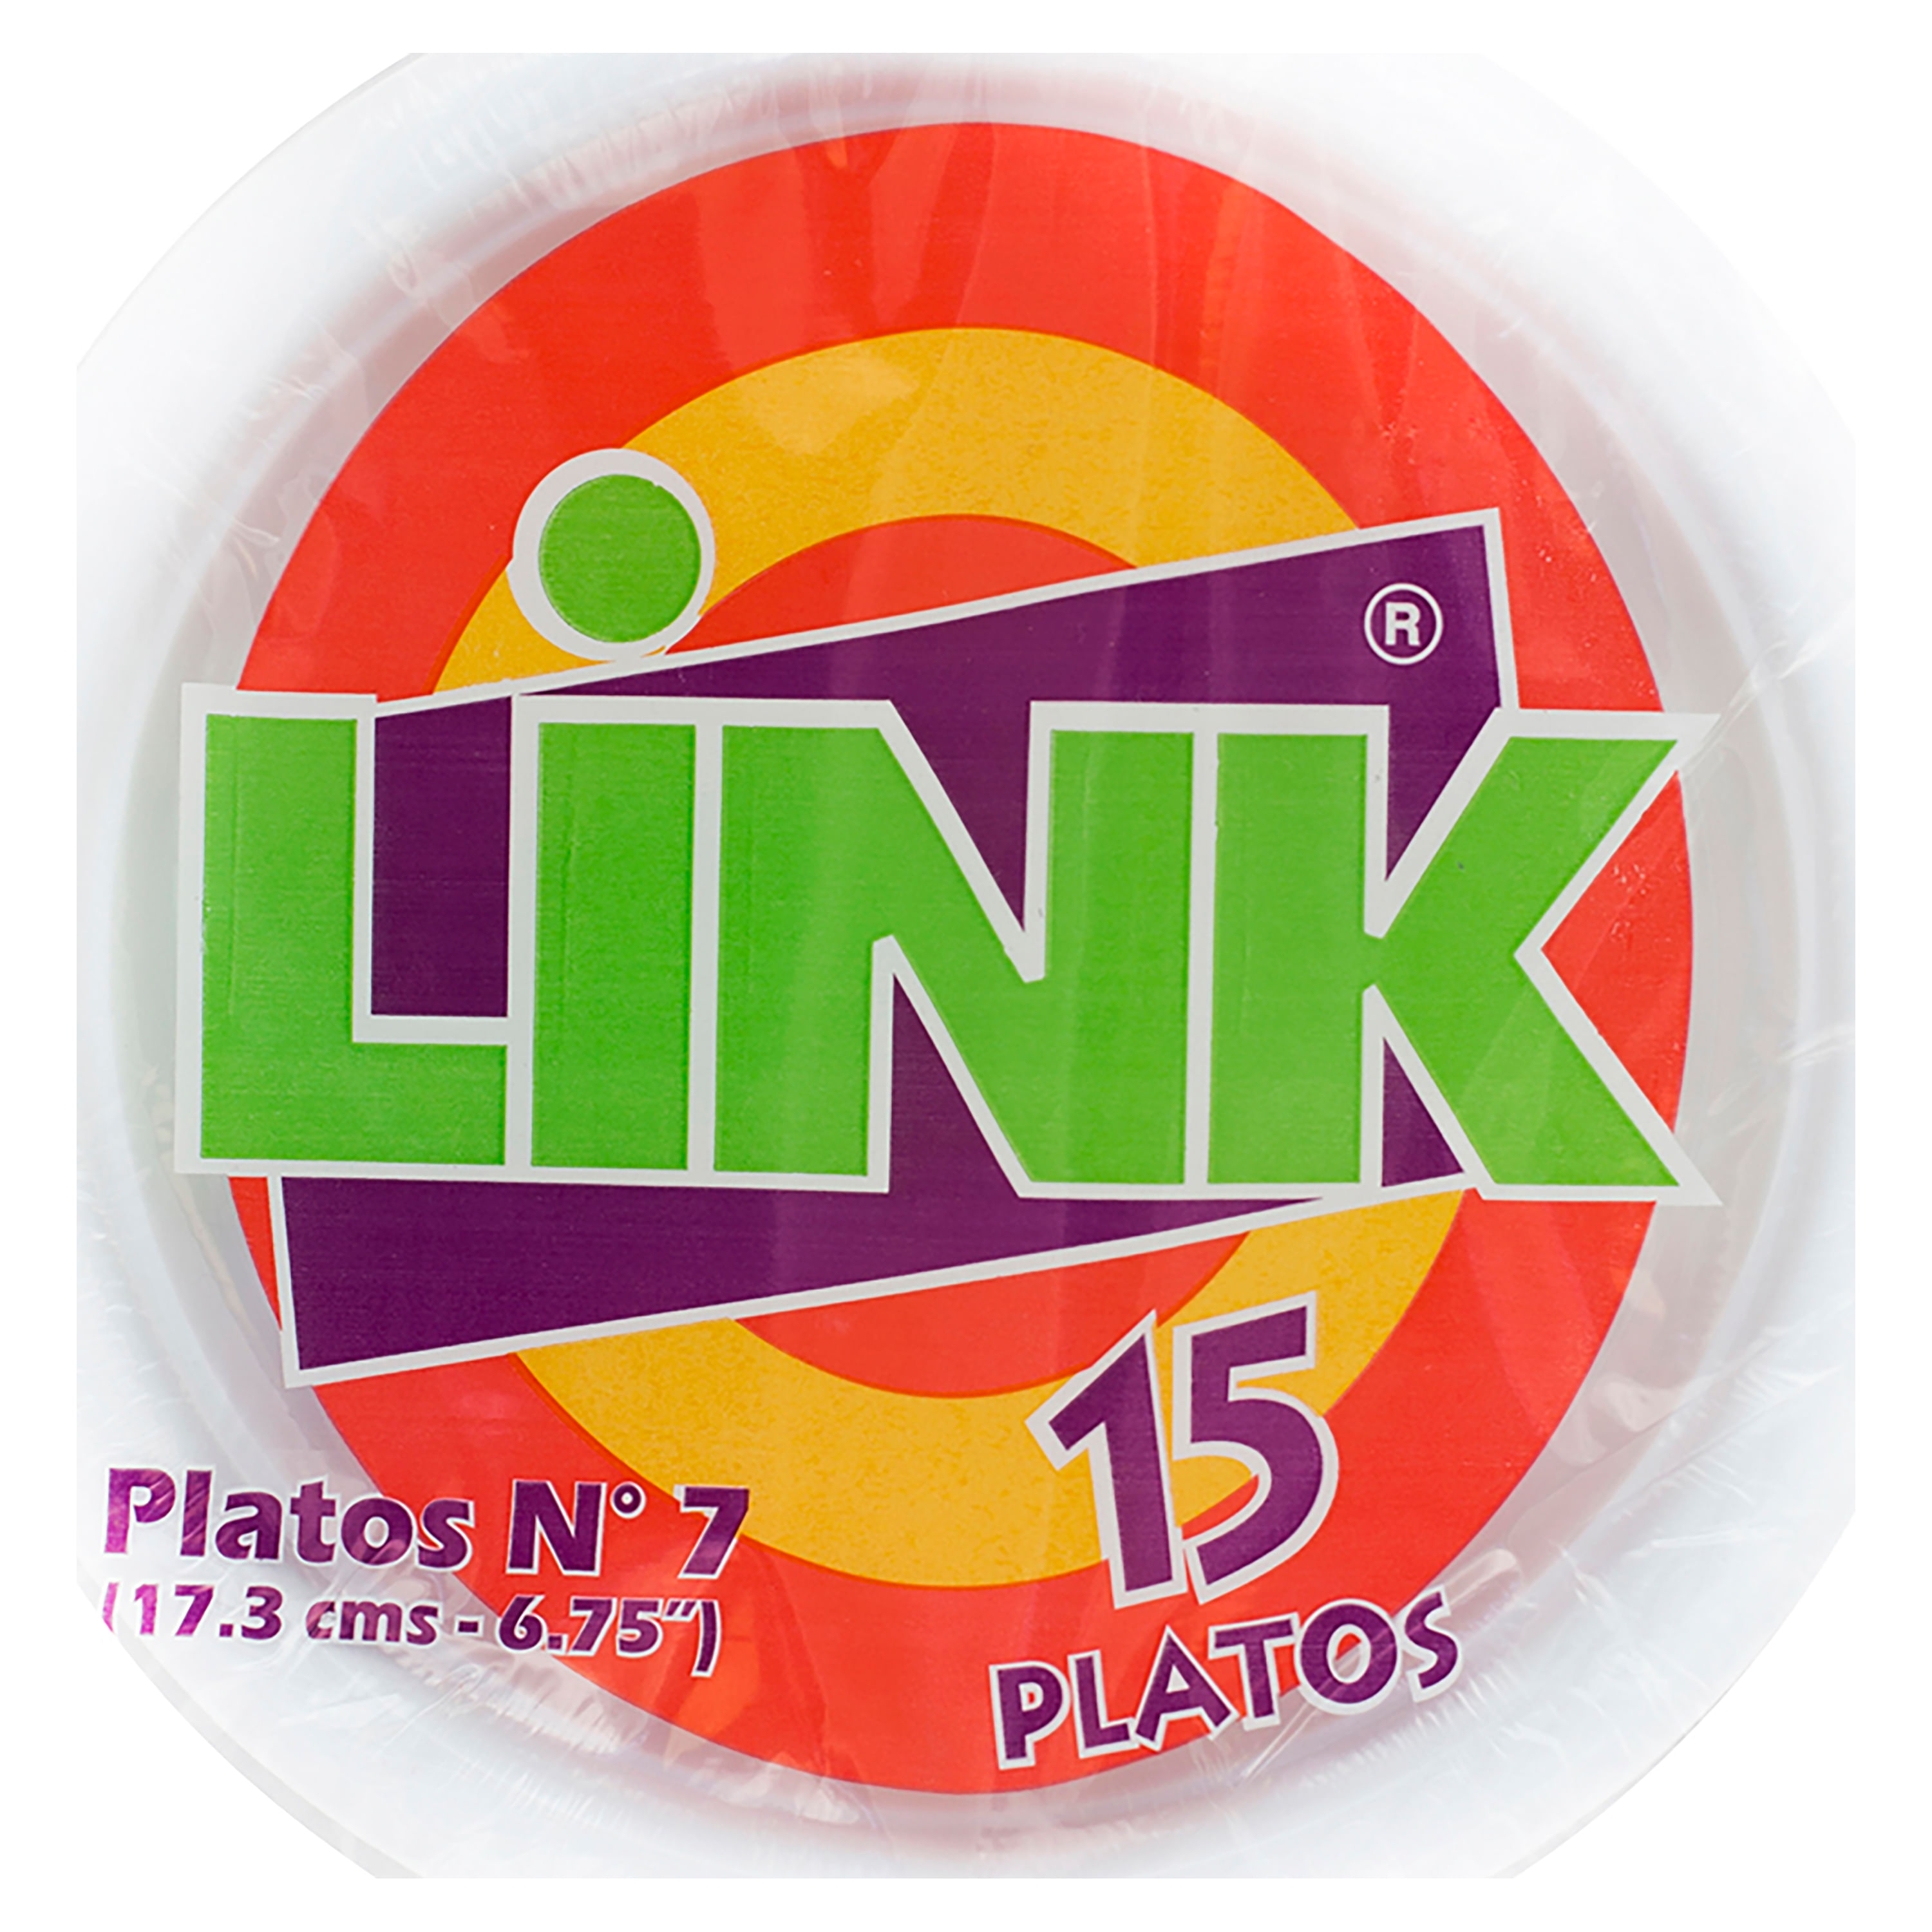 Comprar Plato Plástico Link Desechable N.6 Bowl